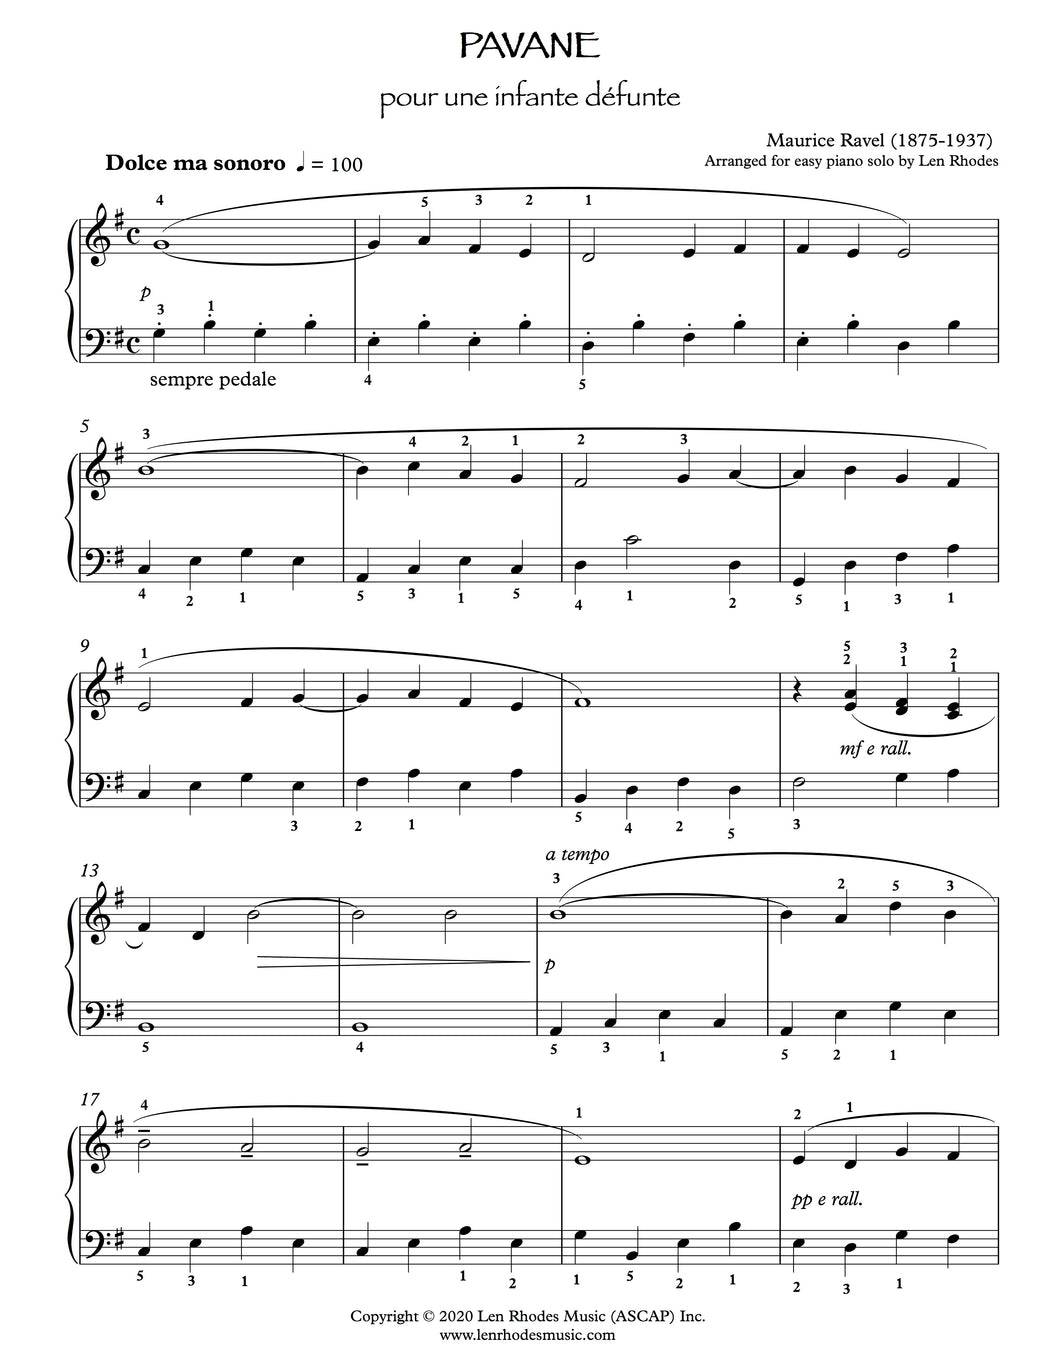 Pavane pour une enfante défunte, Ravel - easy Piano